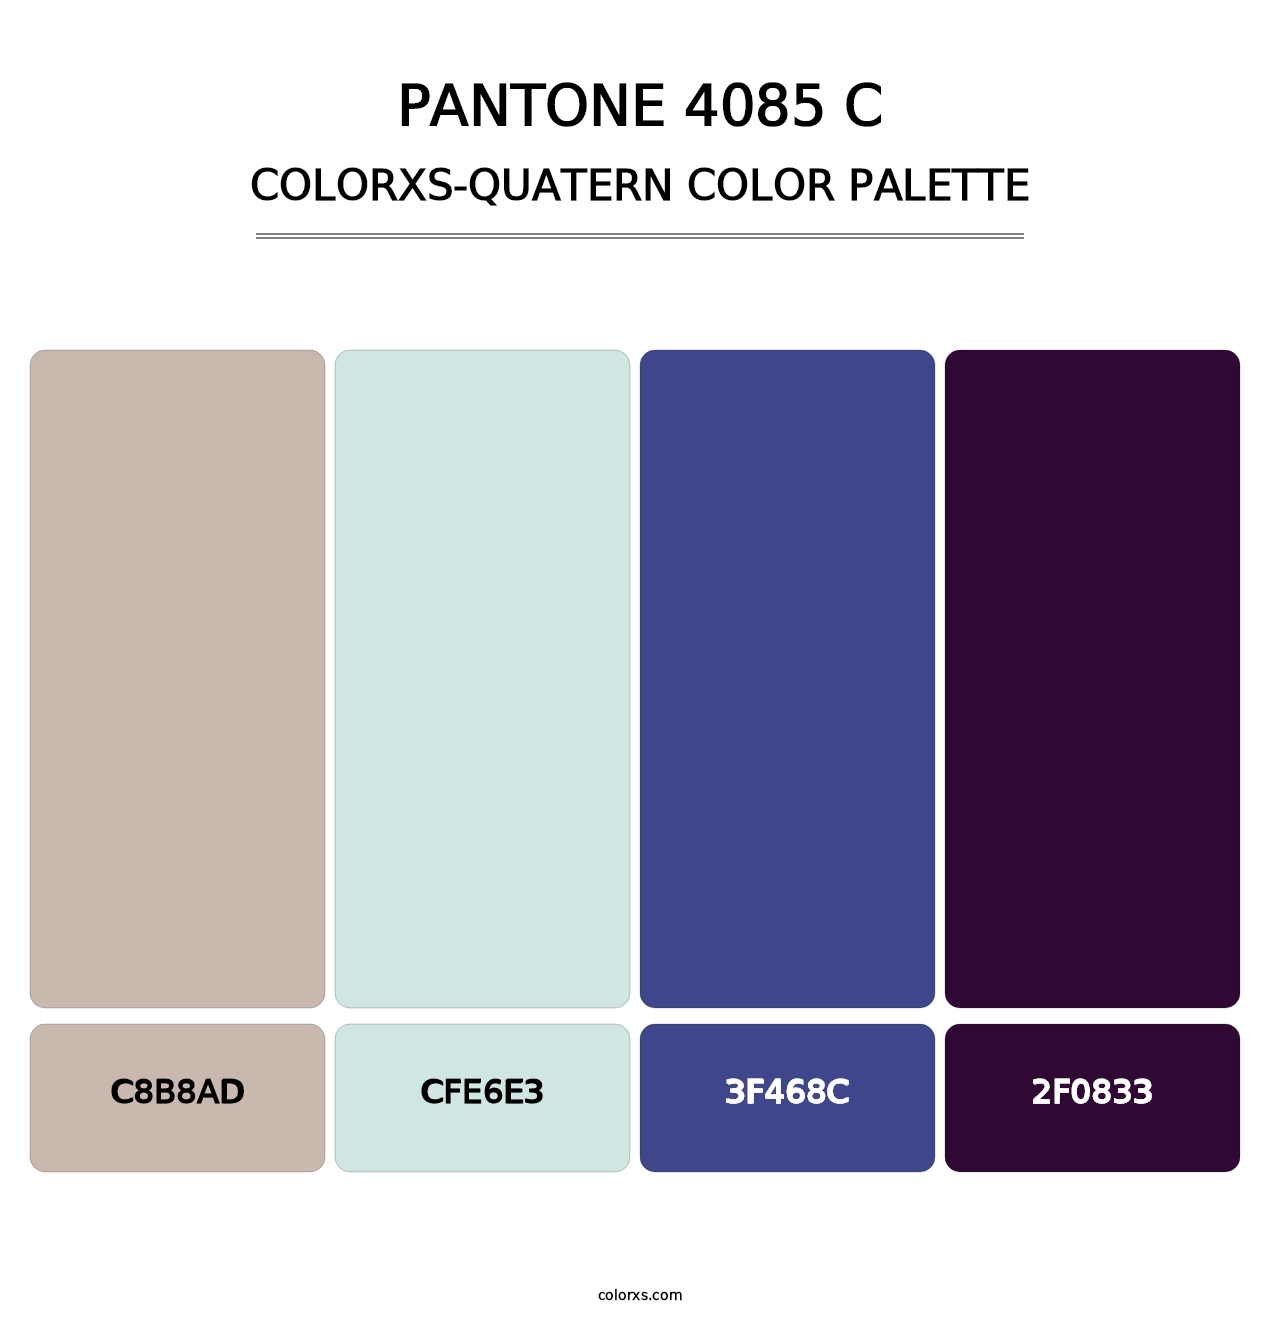 PANTONE 4085 C - Colorxs Quatern Palette